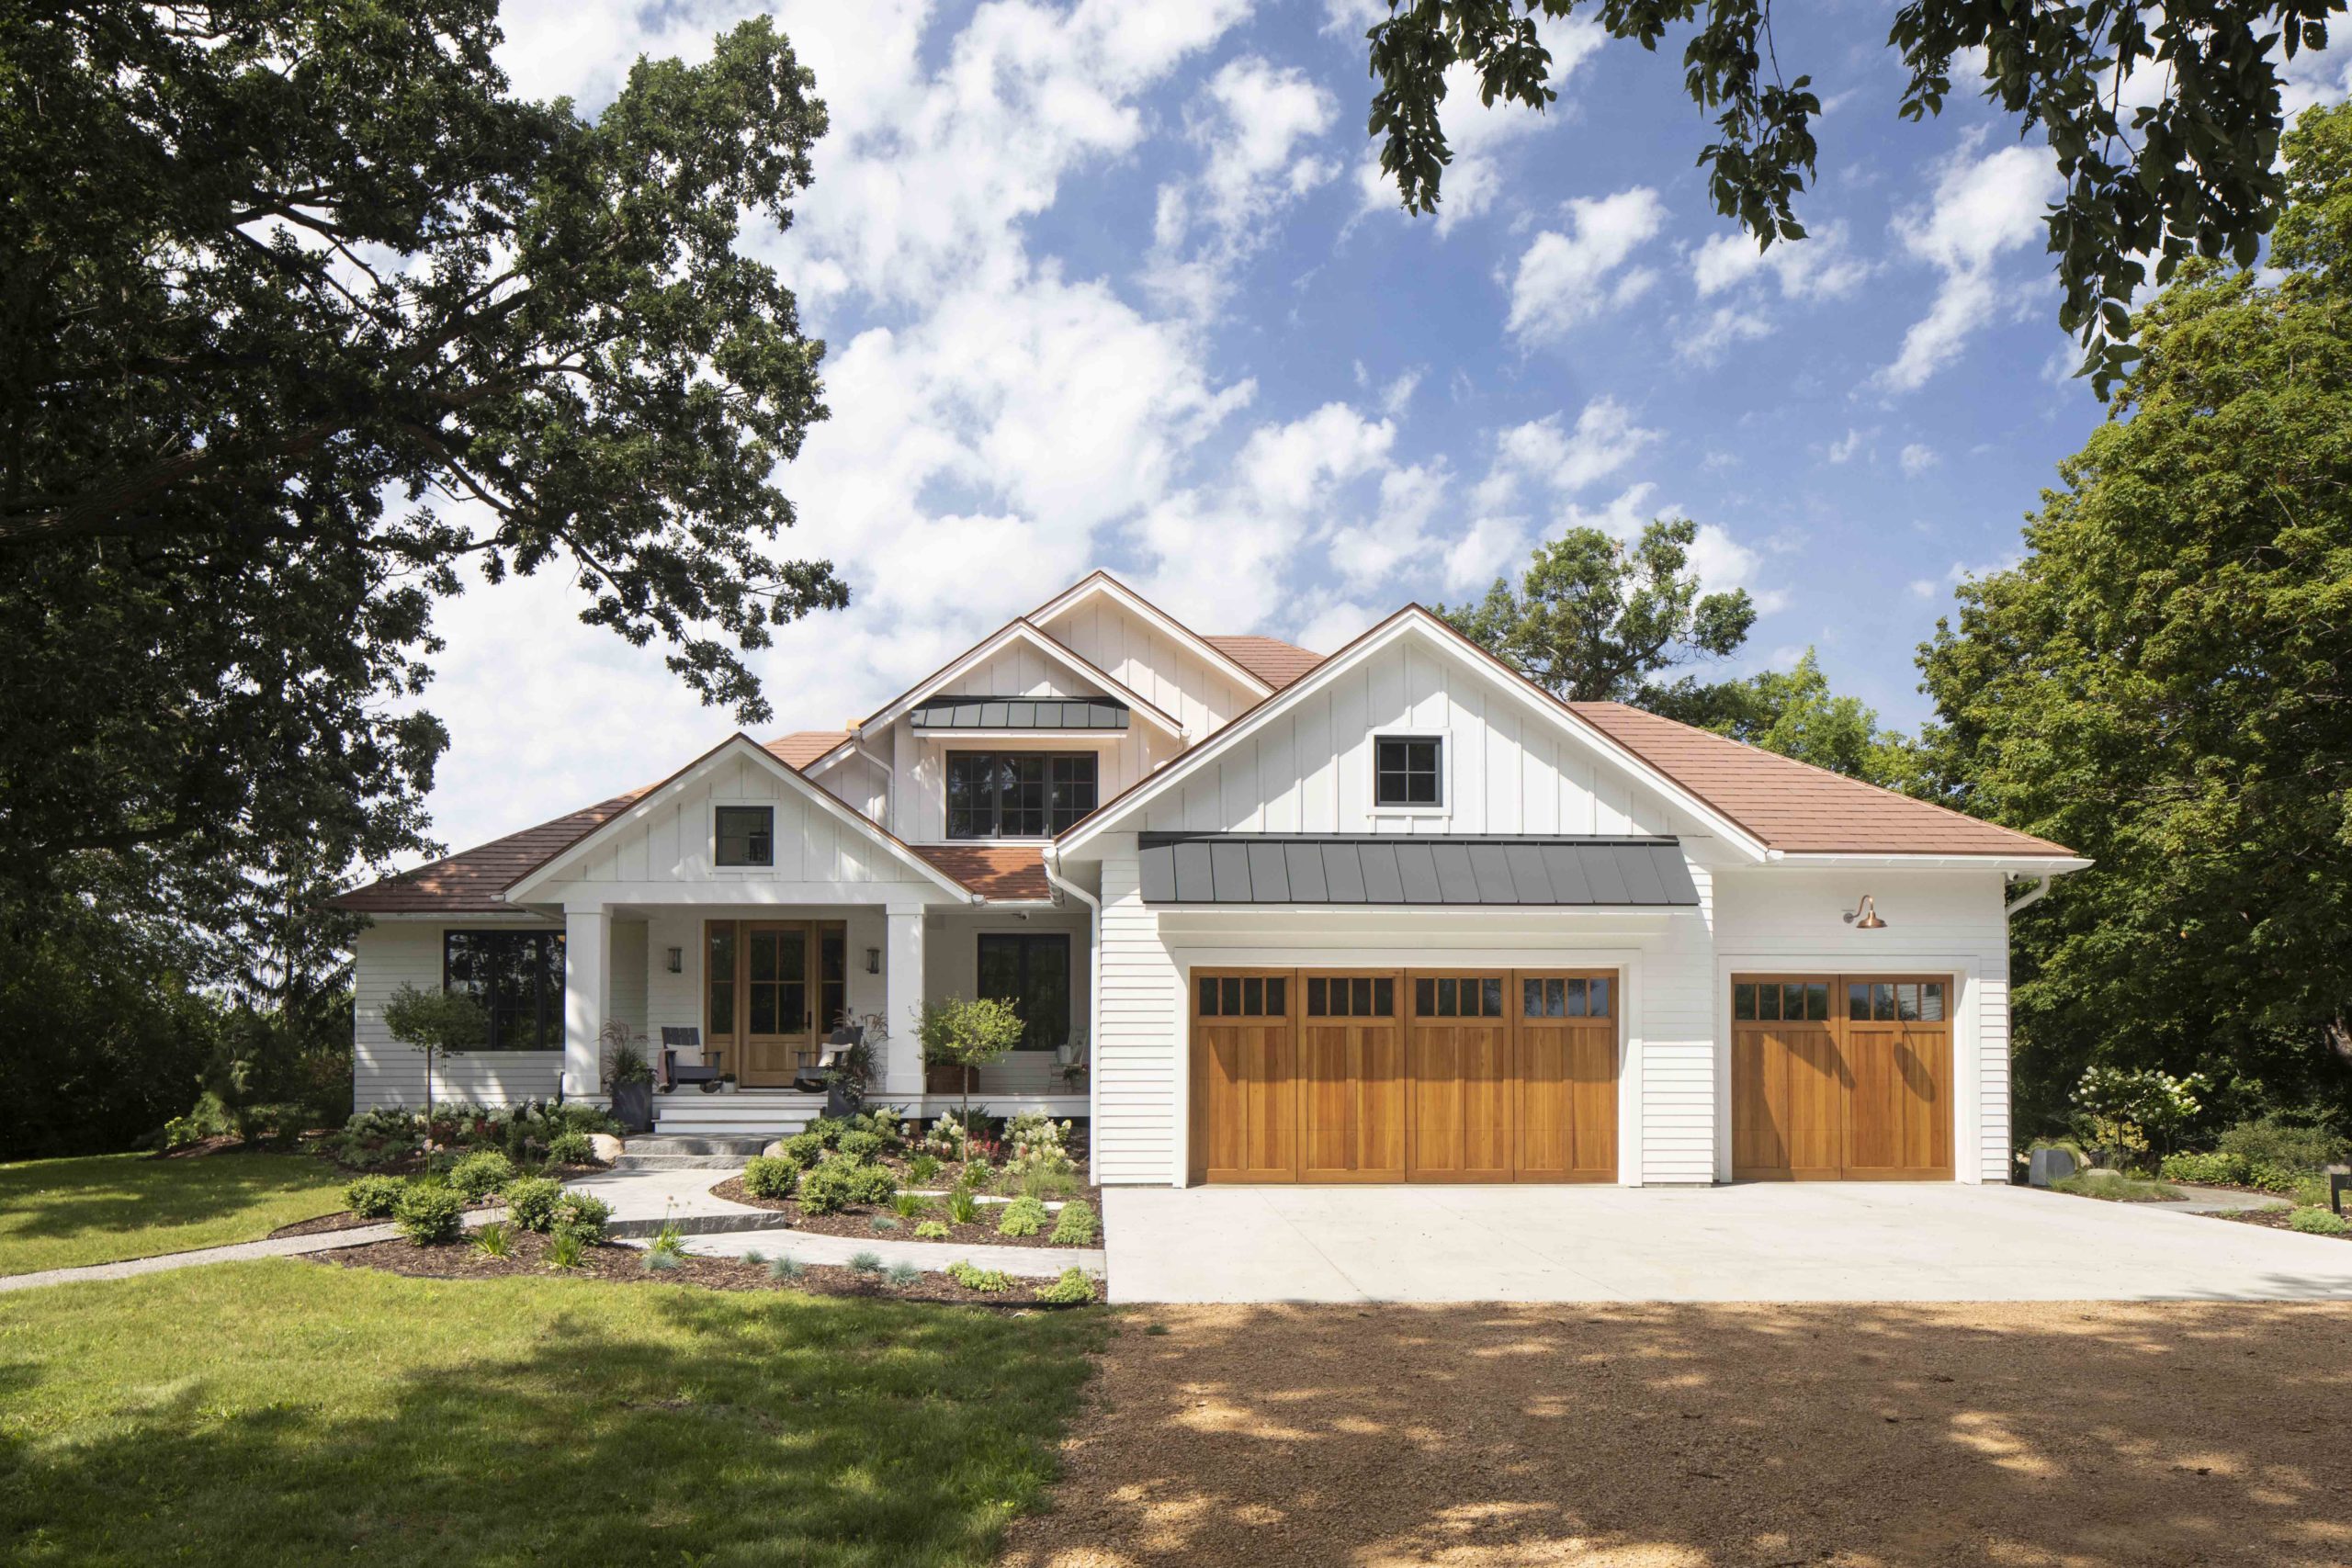 A prairie-style home with a white garage.